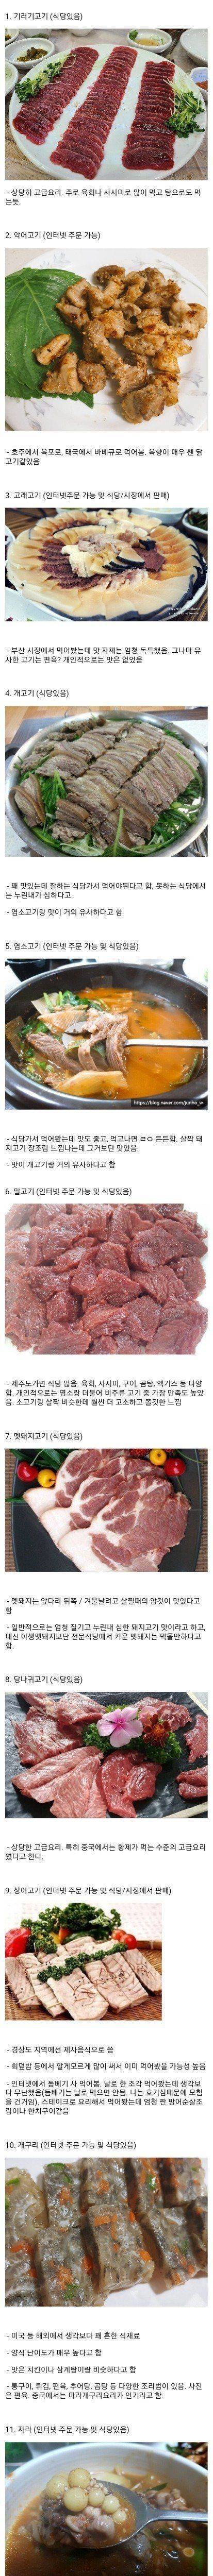 한국에서 먹을 수 있는 고기 종류